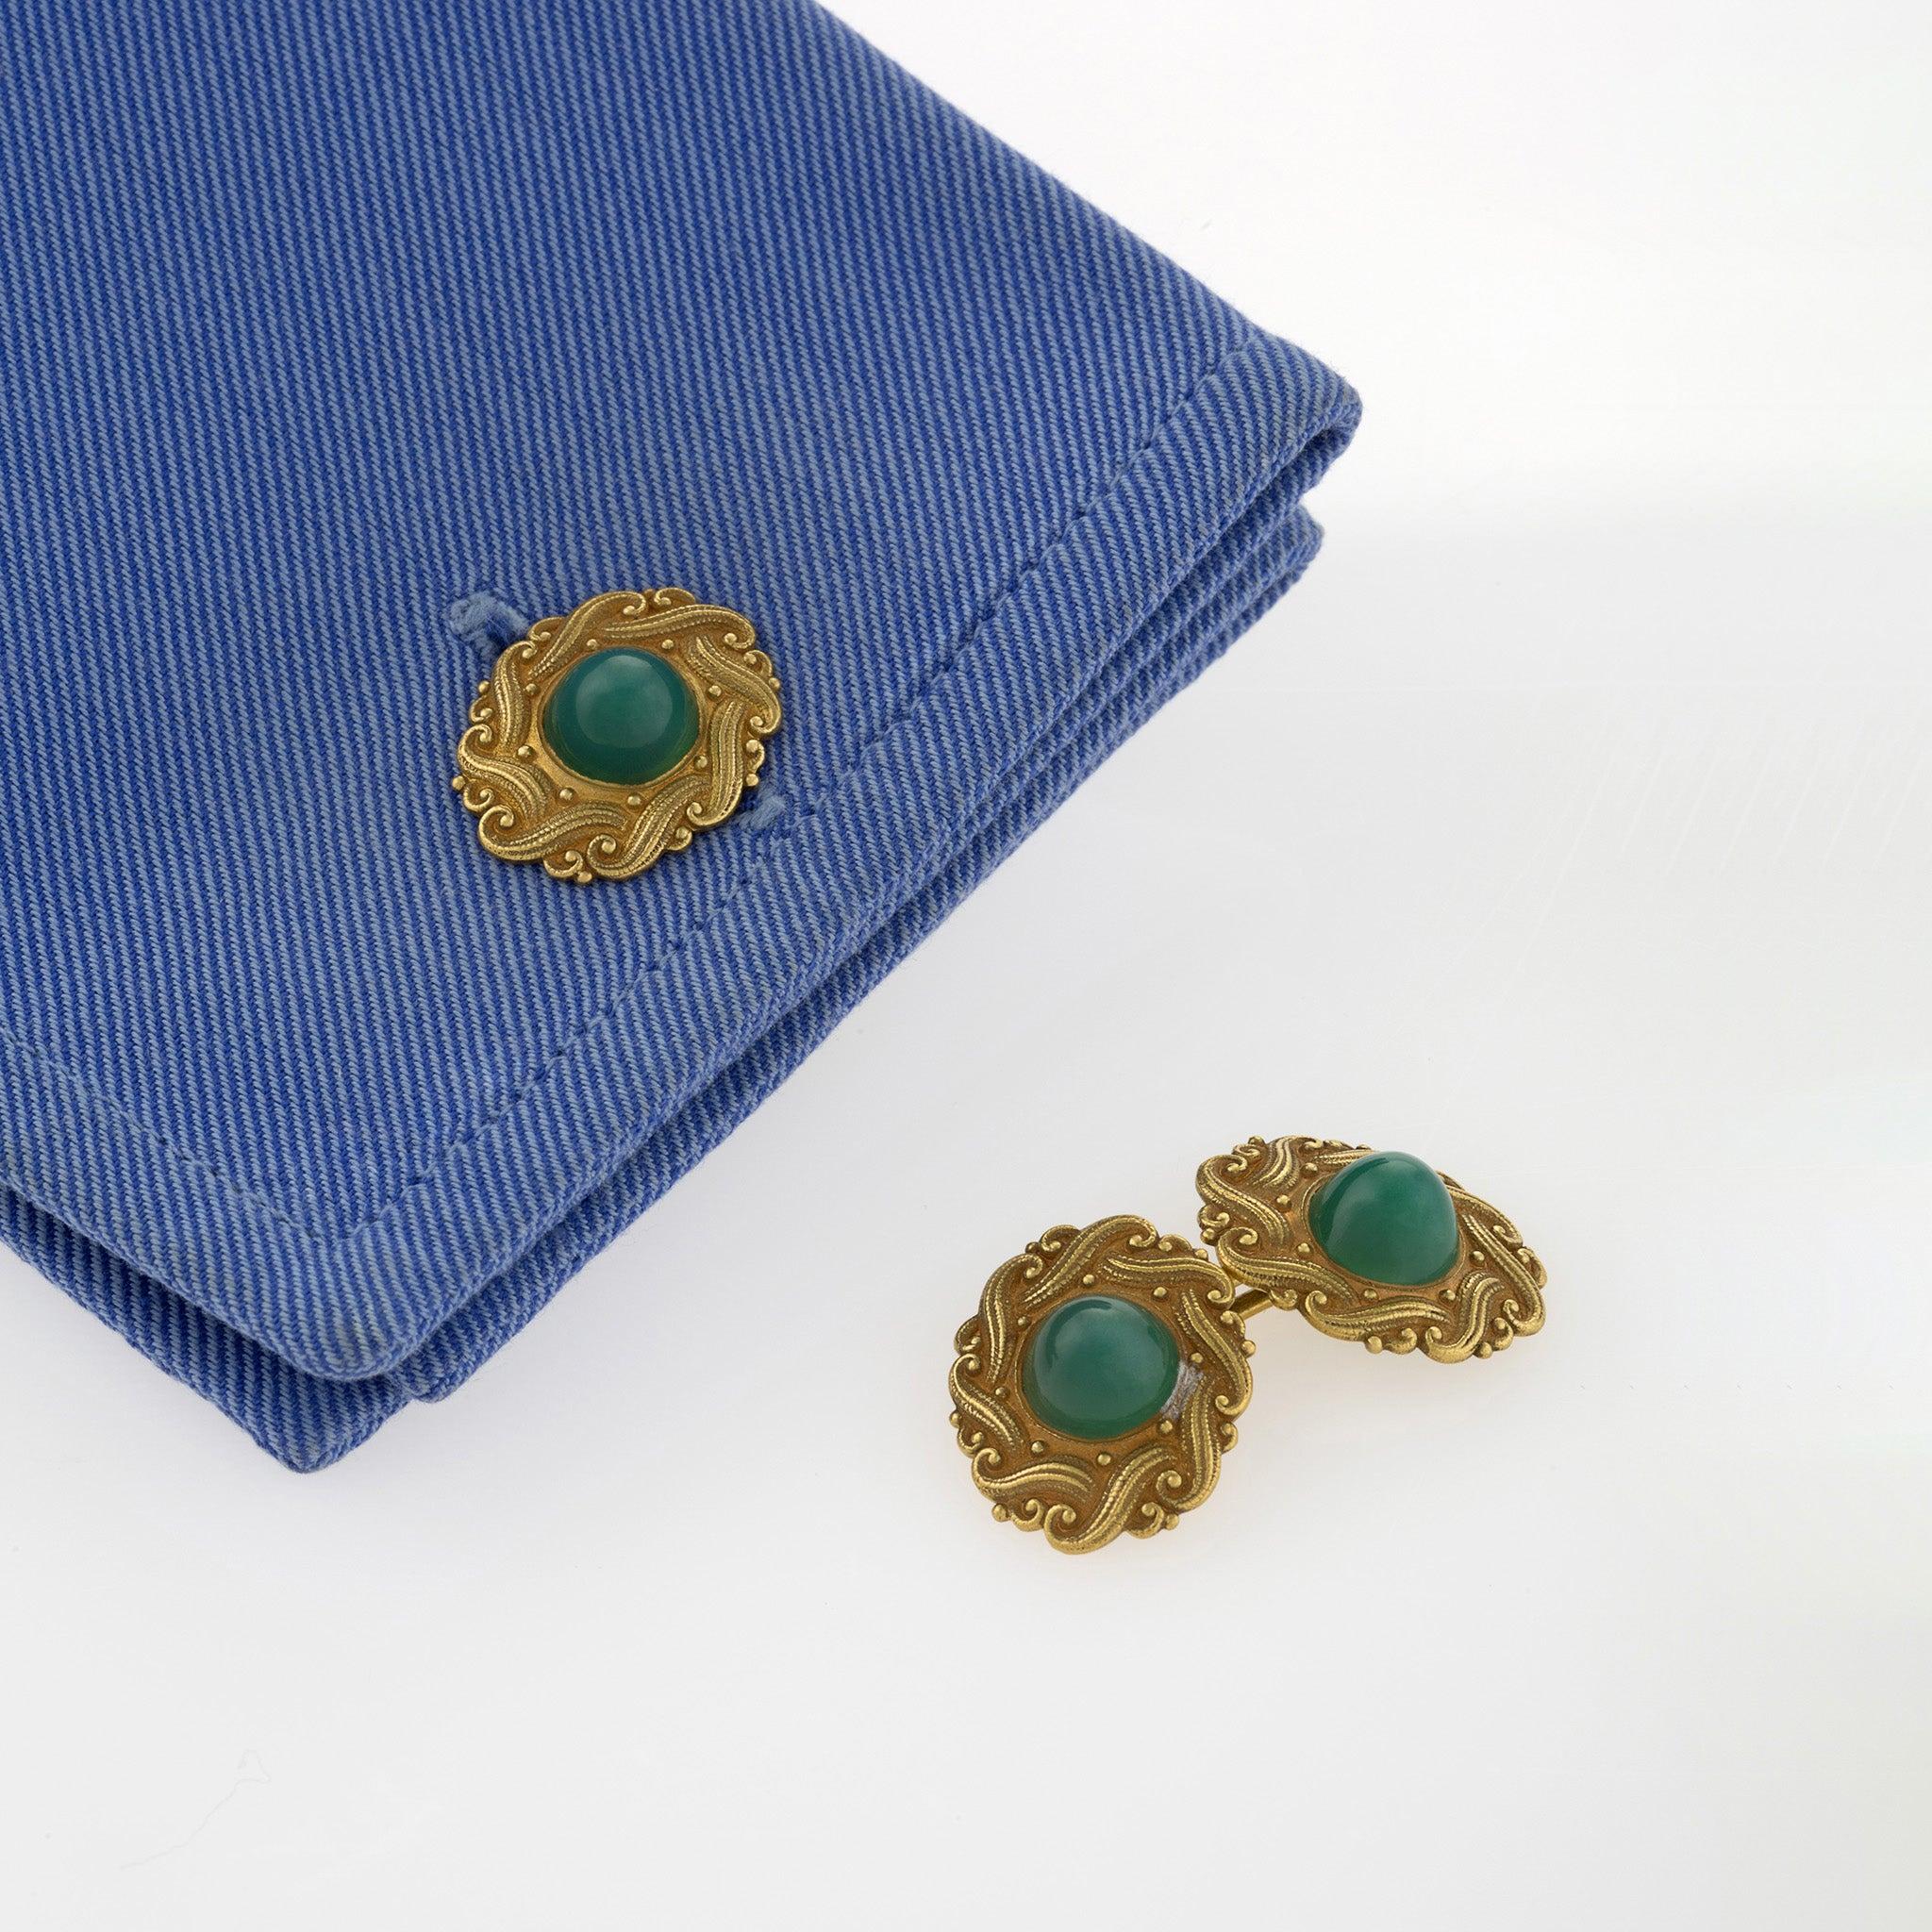 Diese Manschettenknöpfe aus 18-karätigem Gold mit Chrysopras oder grünem Chalzedon im europäischen Jugendstil  stammen aus der Zeit um 1900. Sie sind als doppelte ovale Glieder gestaltet, die jeweils mit einem Zuckerhut-Crosopras-Cabochon in einer